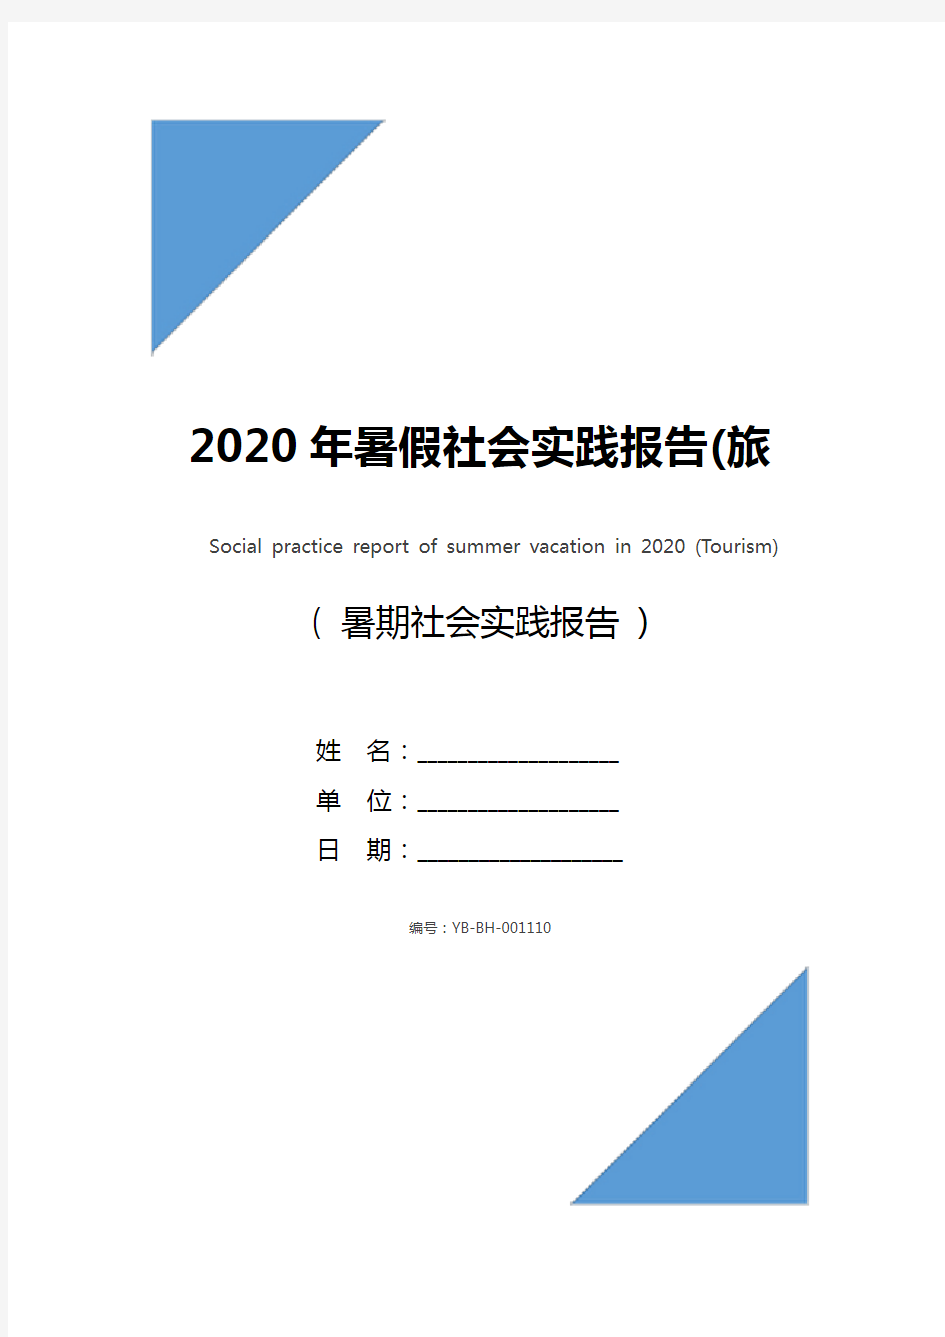 2020年暑假社会实践报告(旅游类)